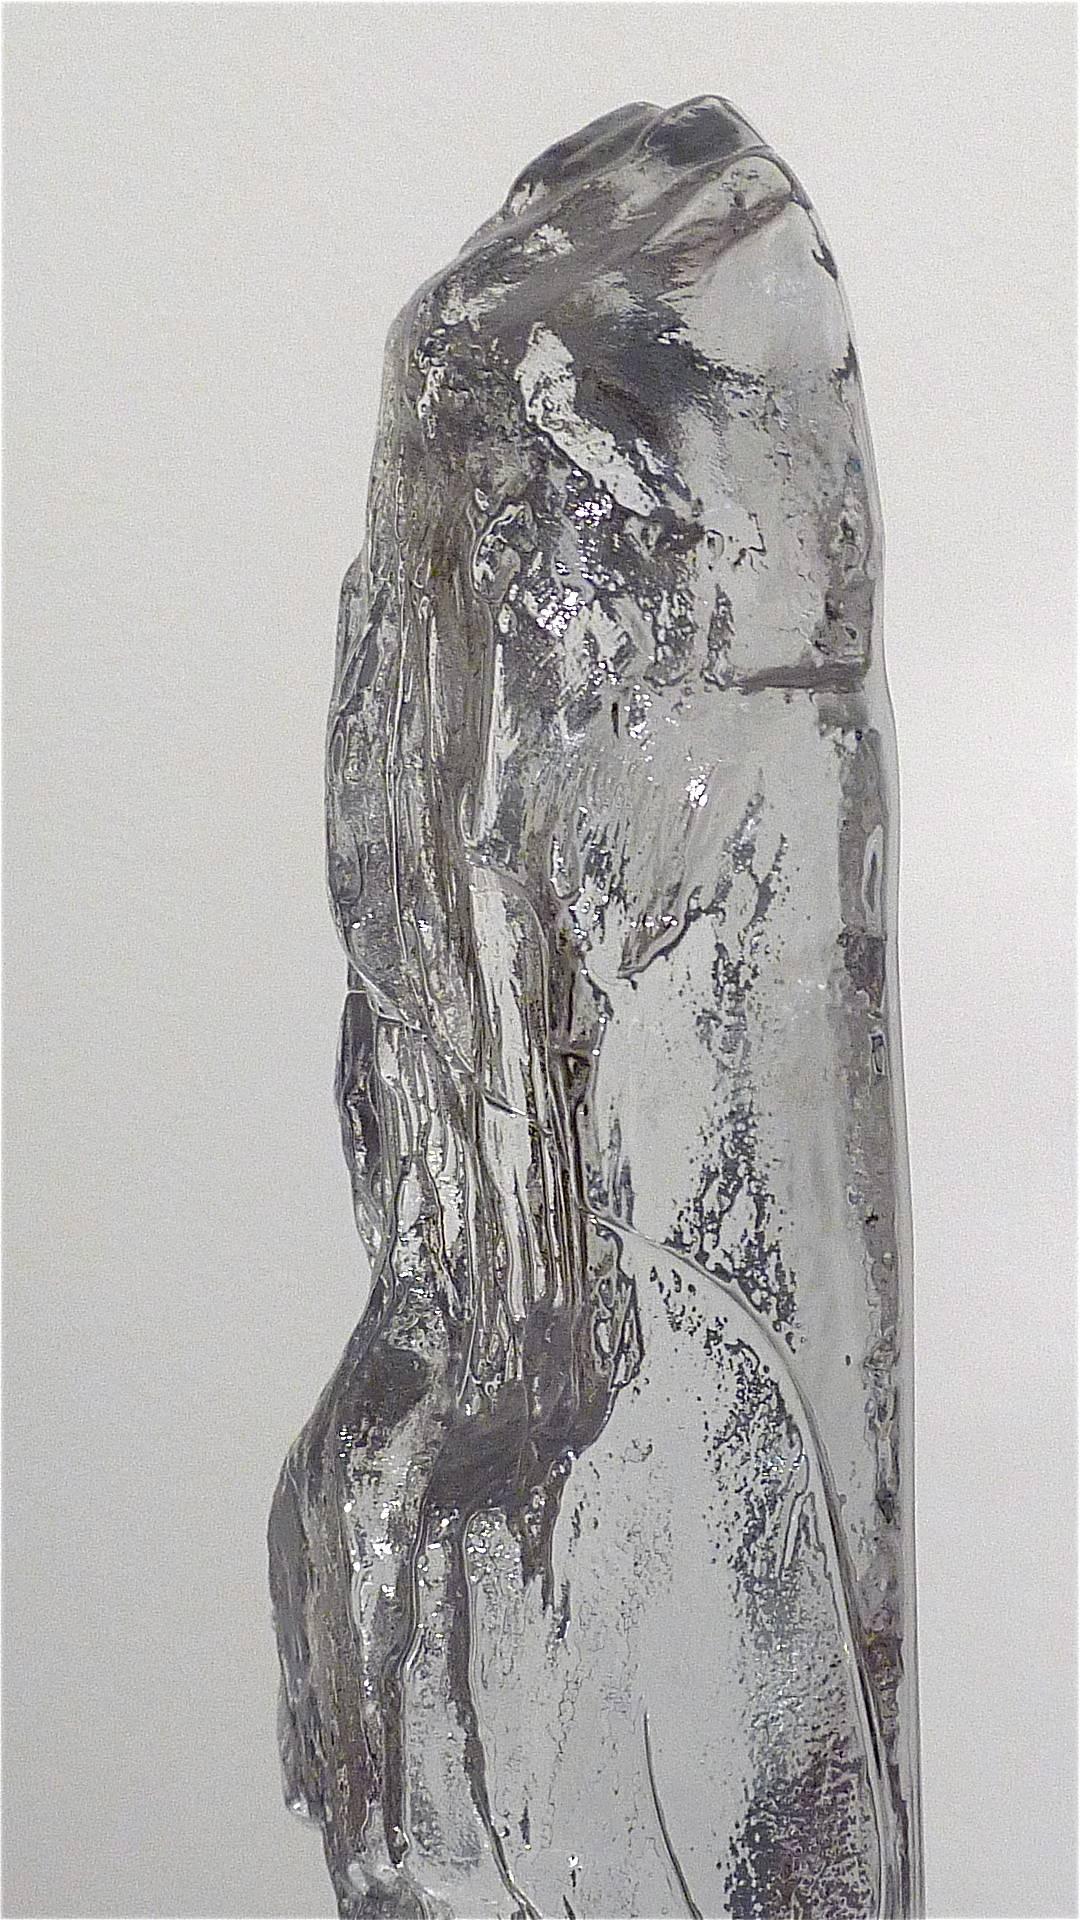 Midcentury Crystal Glass Ice Sculpture by Bengt Edenfalk Kaiser Kalmar Style 70s (Schwedisch)